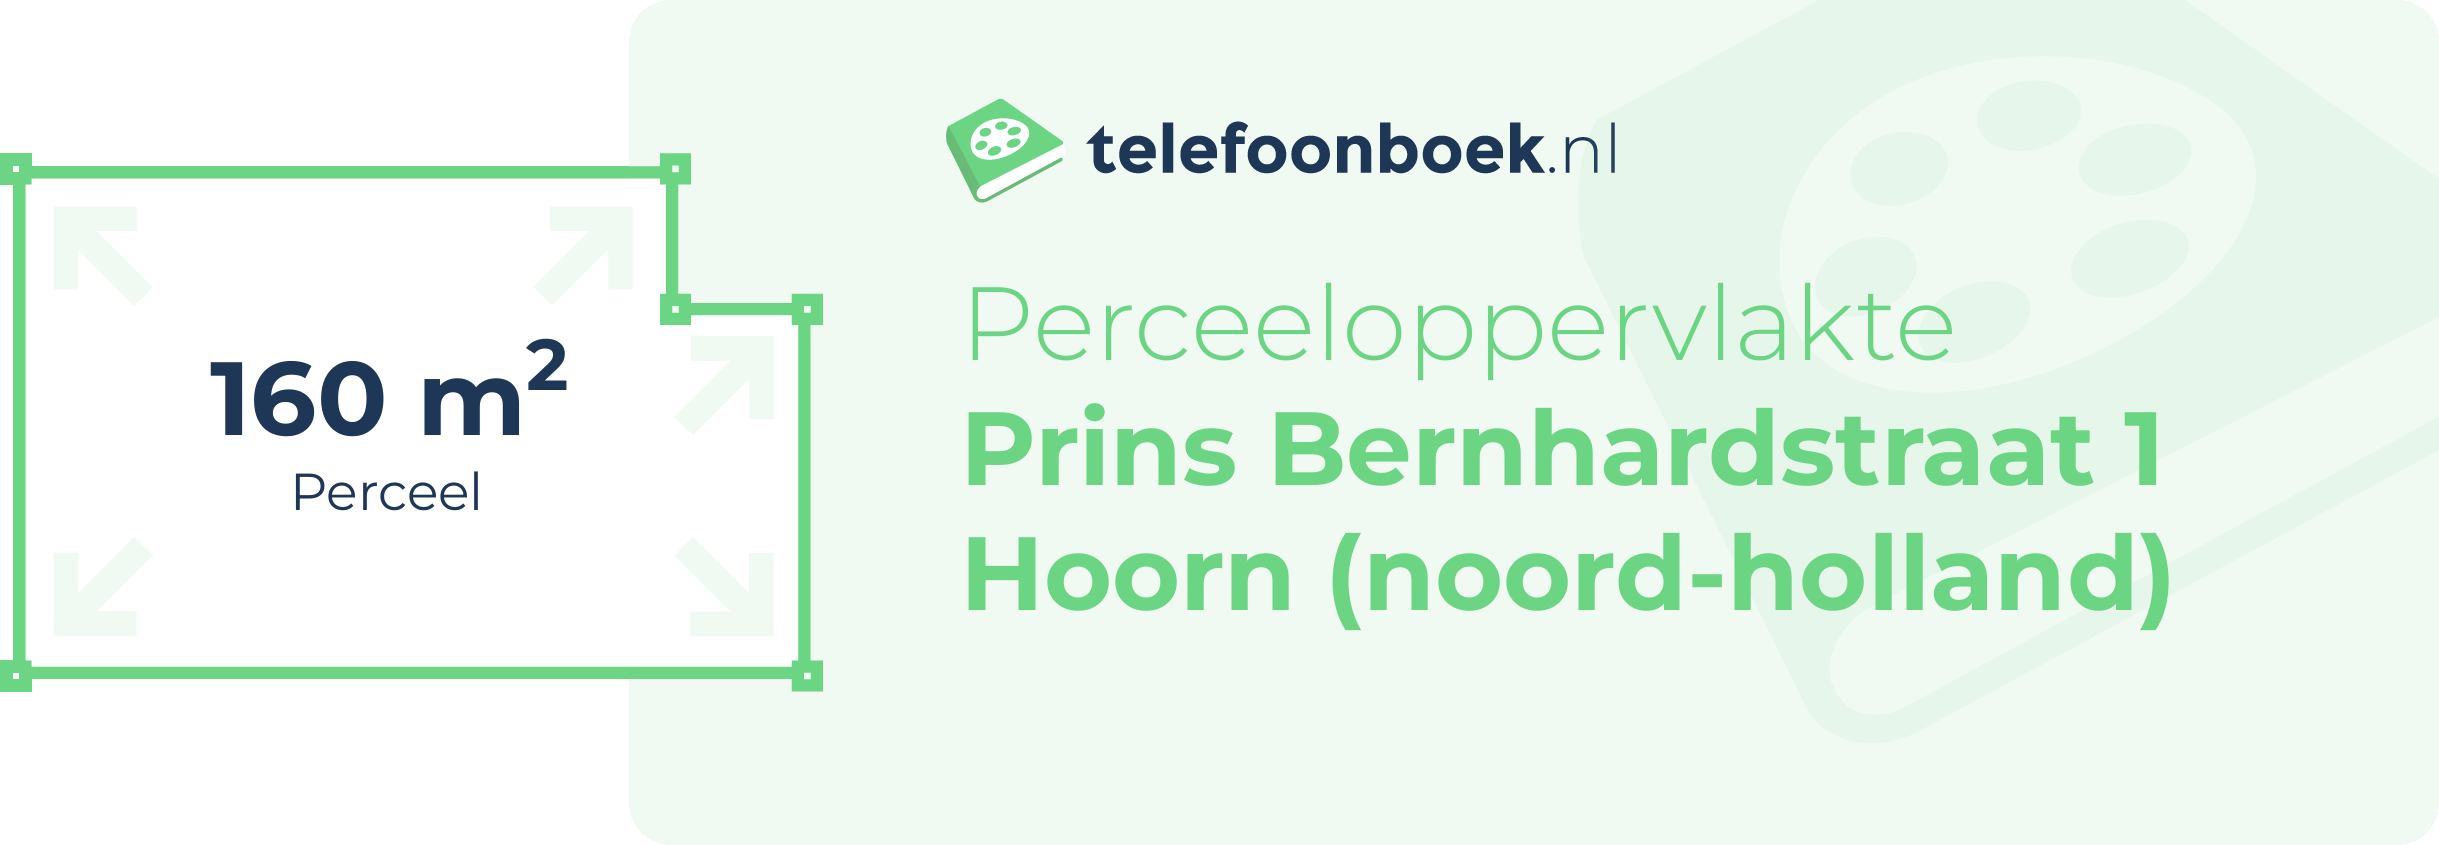 Perceeloppervlakte Prins Bernhardstraat 1 Hoorn (Noord-Holland)